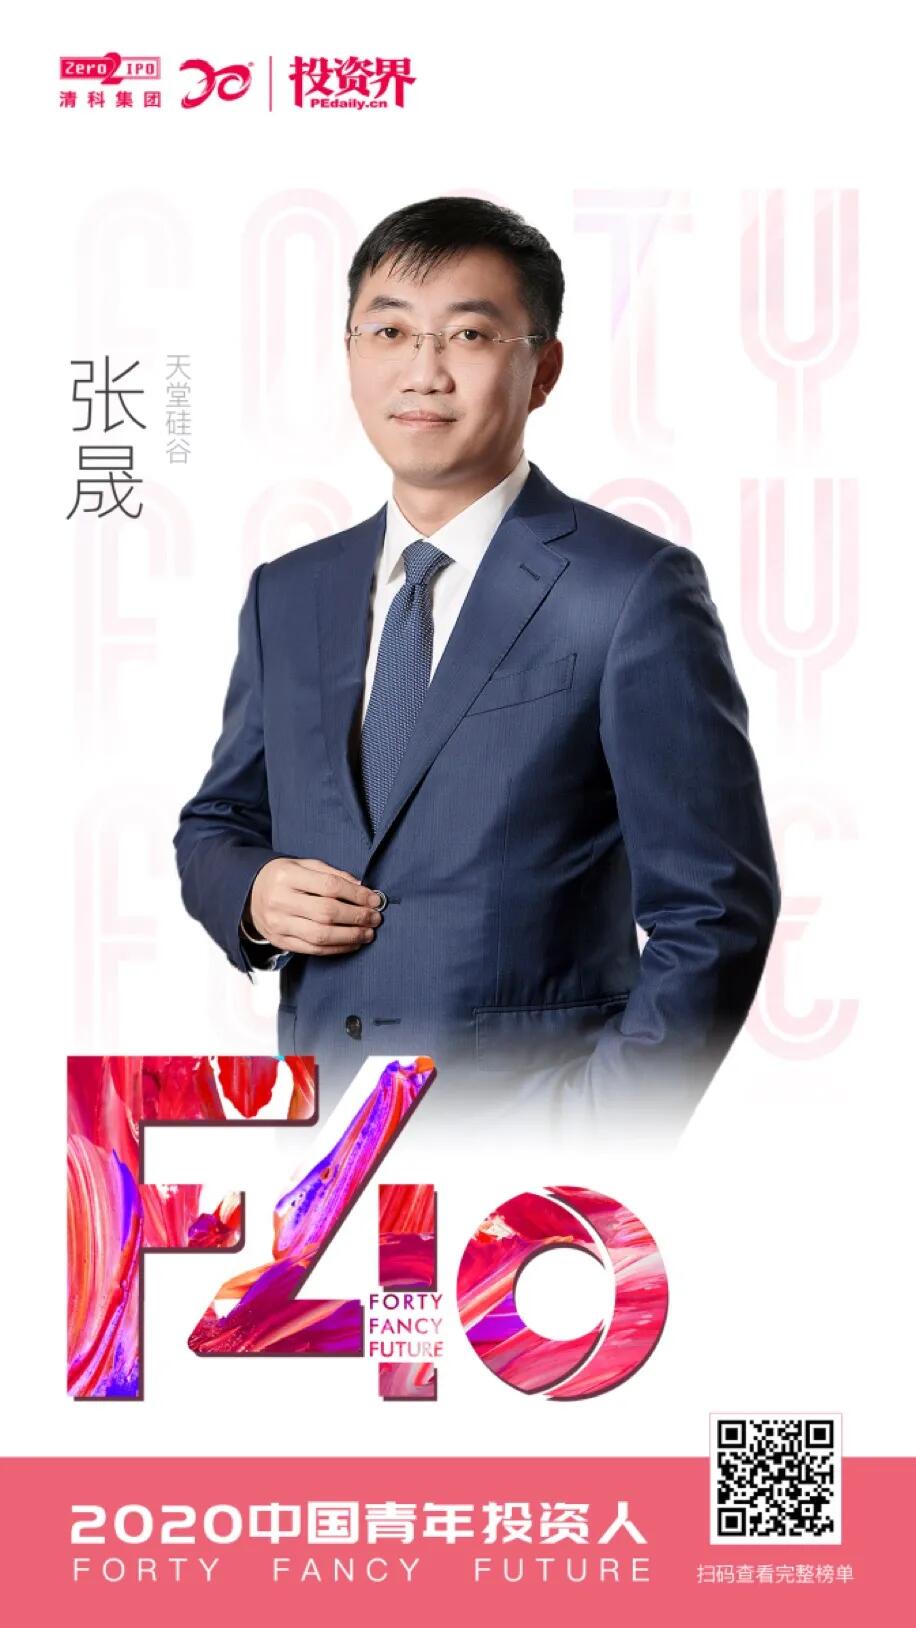 【动态新闻】天堂硅谷总裁张晟荣膺2020清科投资界“F40中国青年投资人”